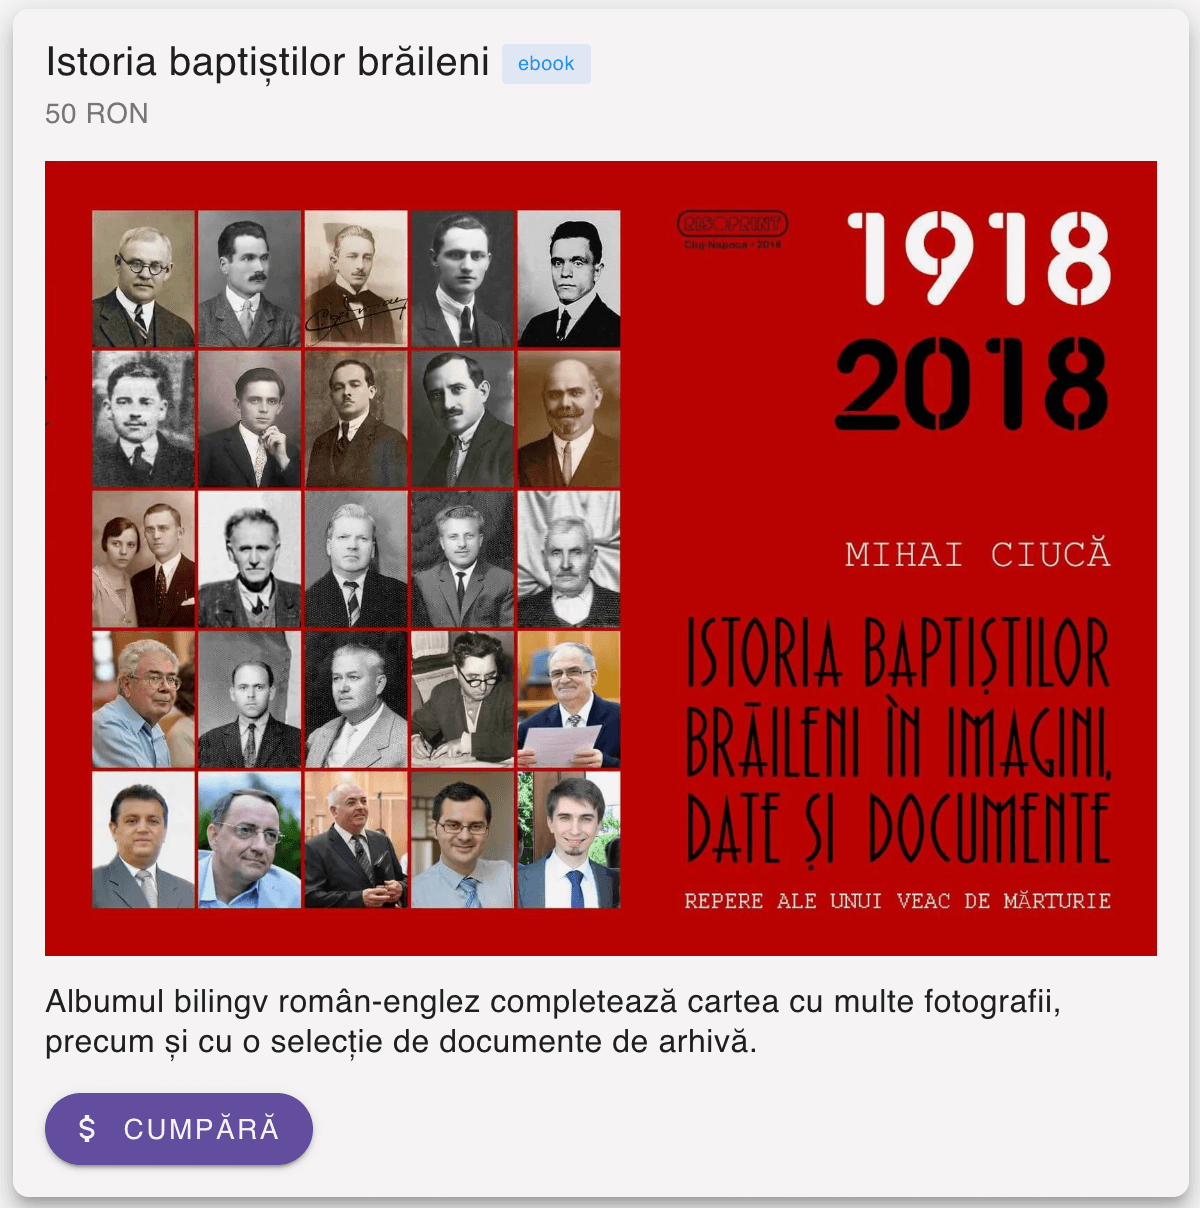 Cumpără eBook „Istoria baptiștilor brăileni în imagini, date și documente: Repere ale unui veac de mărturie (1918-2018)”